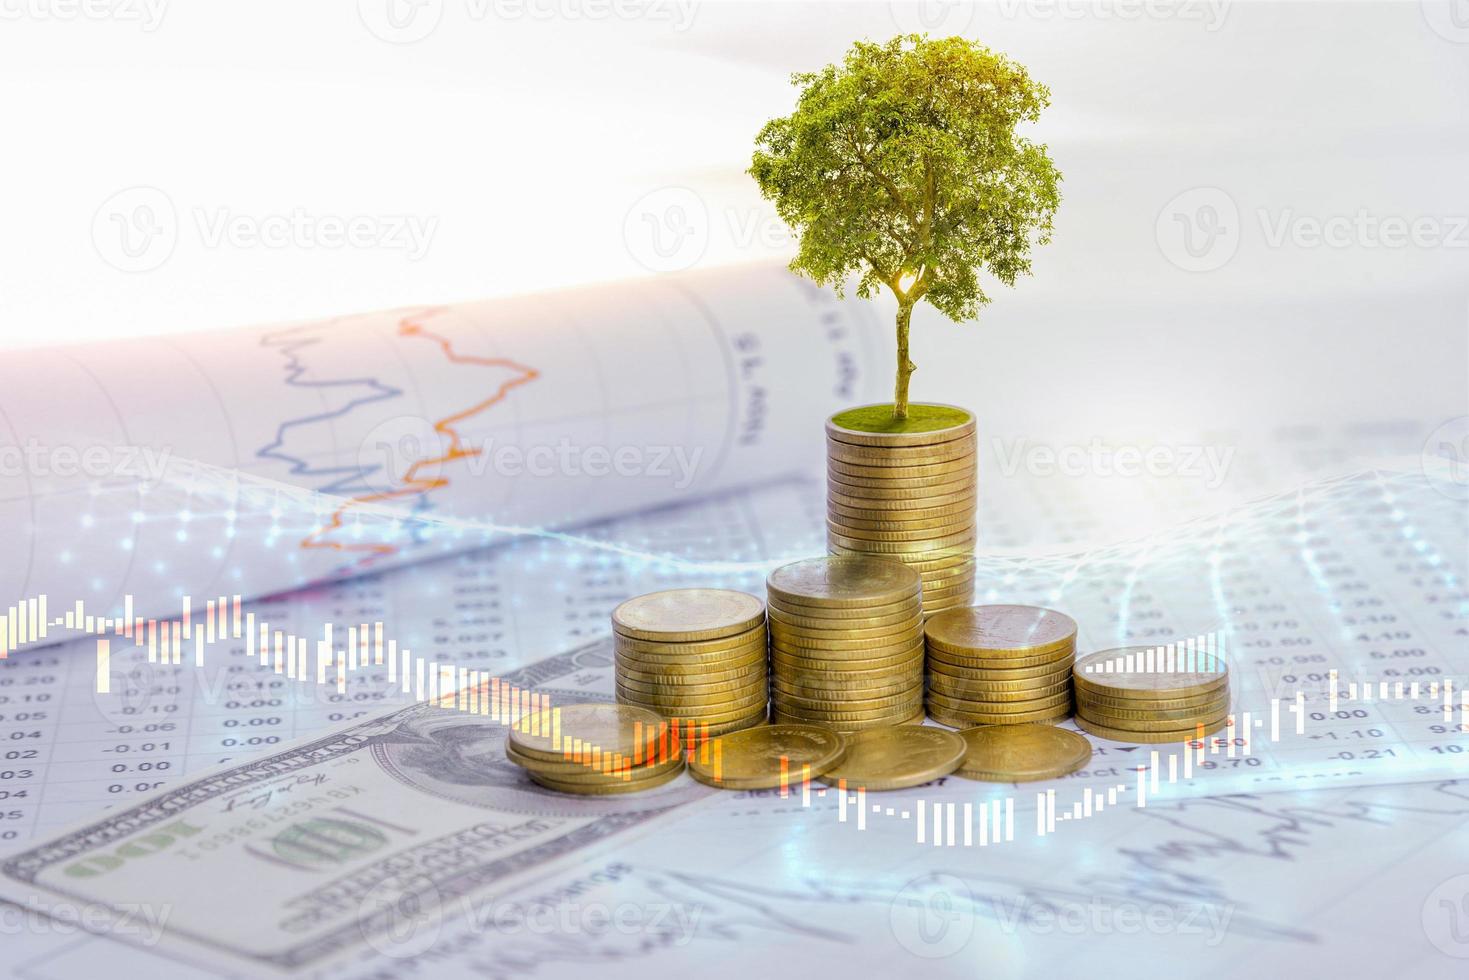 el árbol está creciendo tanto en el progreso del dinero como en los informes financieros, junto con las cuentas financieras, los negocios, la inversión en la mesa del inversor. concepto de inversión frontal foto